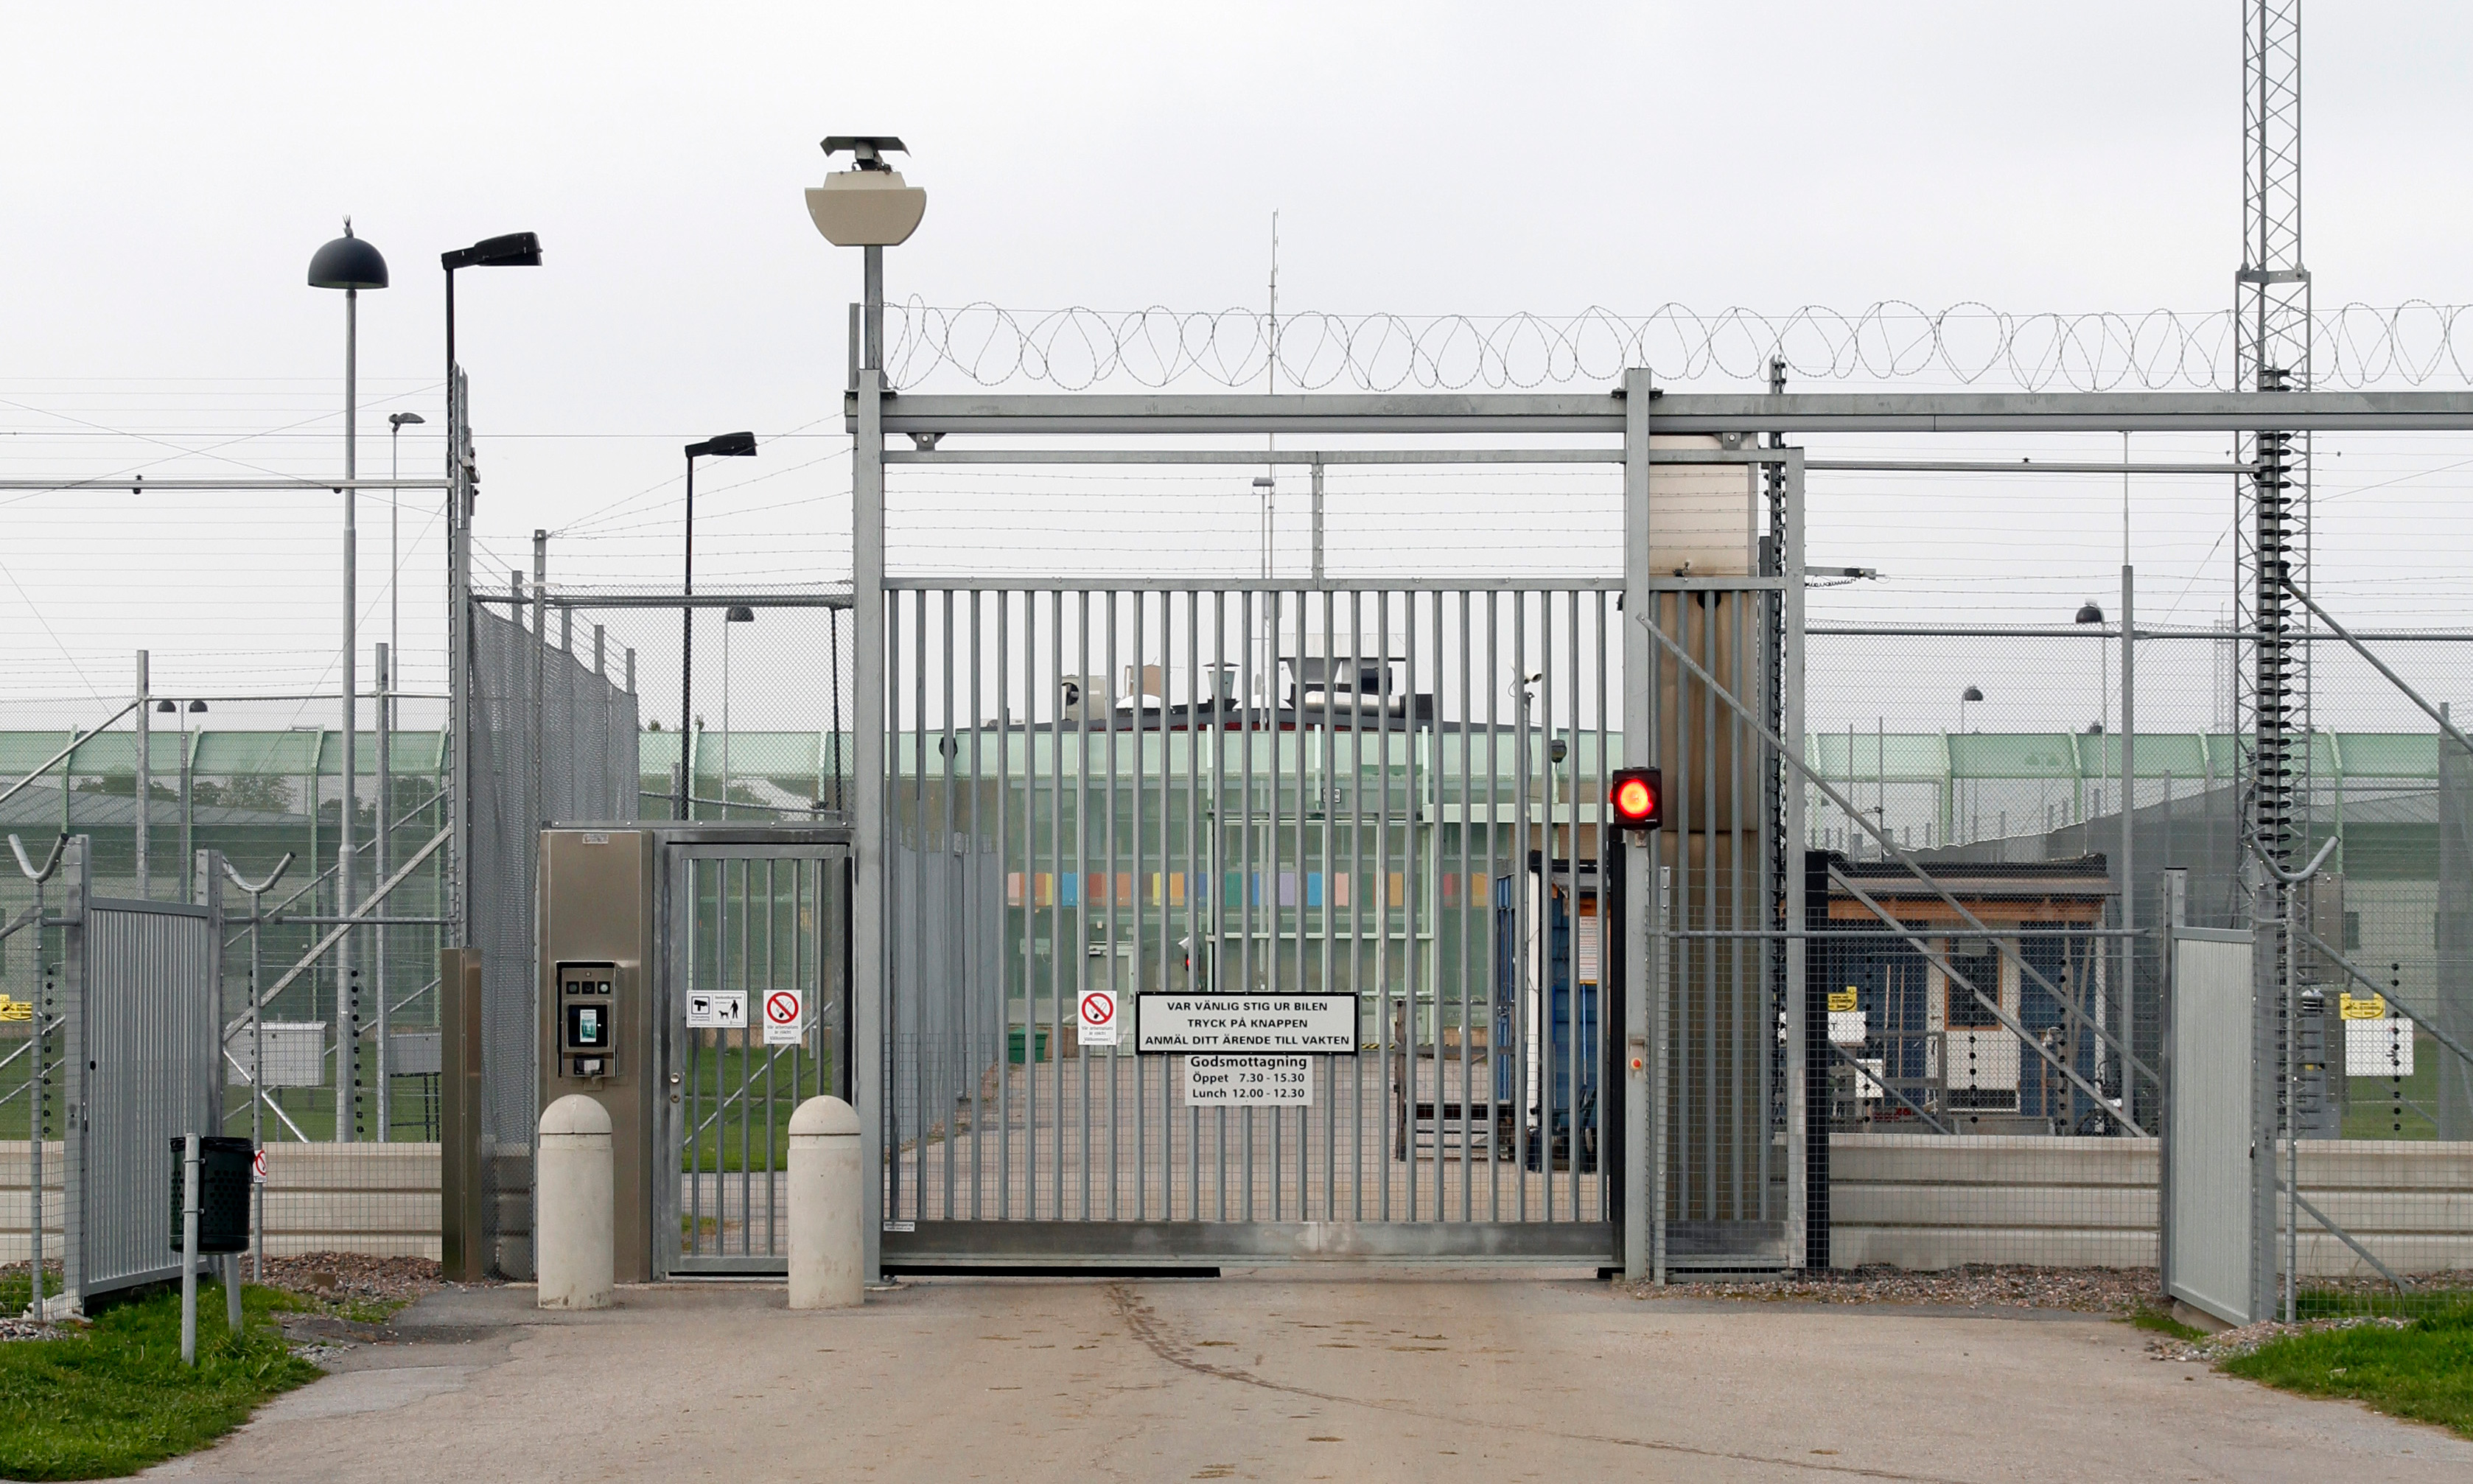 Sveriges fängelser har inte renoverats som de borde, vilket har lett till mögel och andra problem.